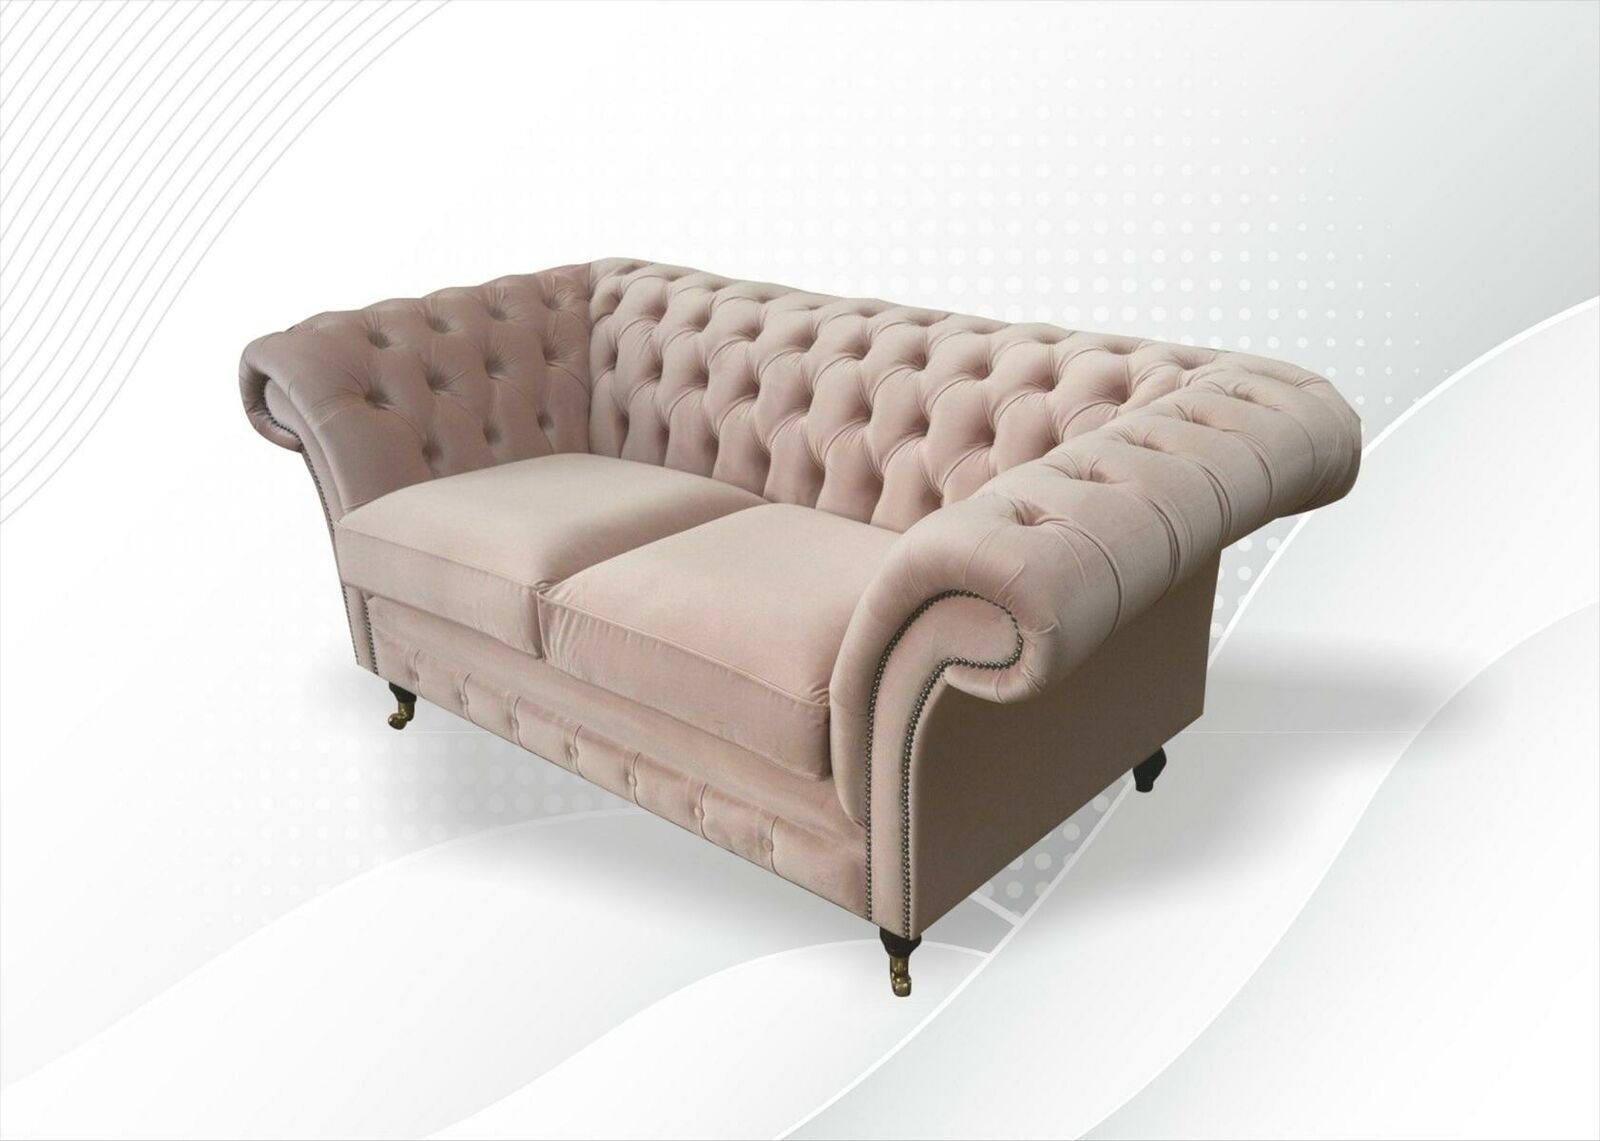 JVmoebel Chesterfield-Sofa Stilvoller Chesterfield 2-Sitzer Pink Wohnzimmermöbel Neu, Made in Europe